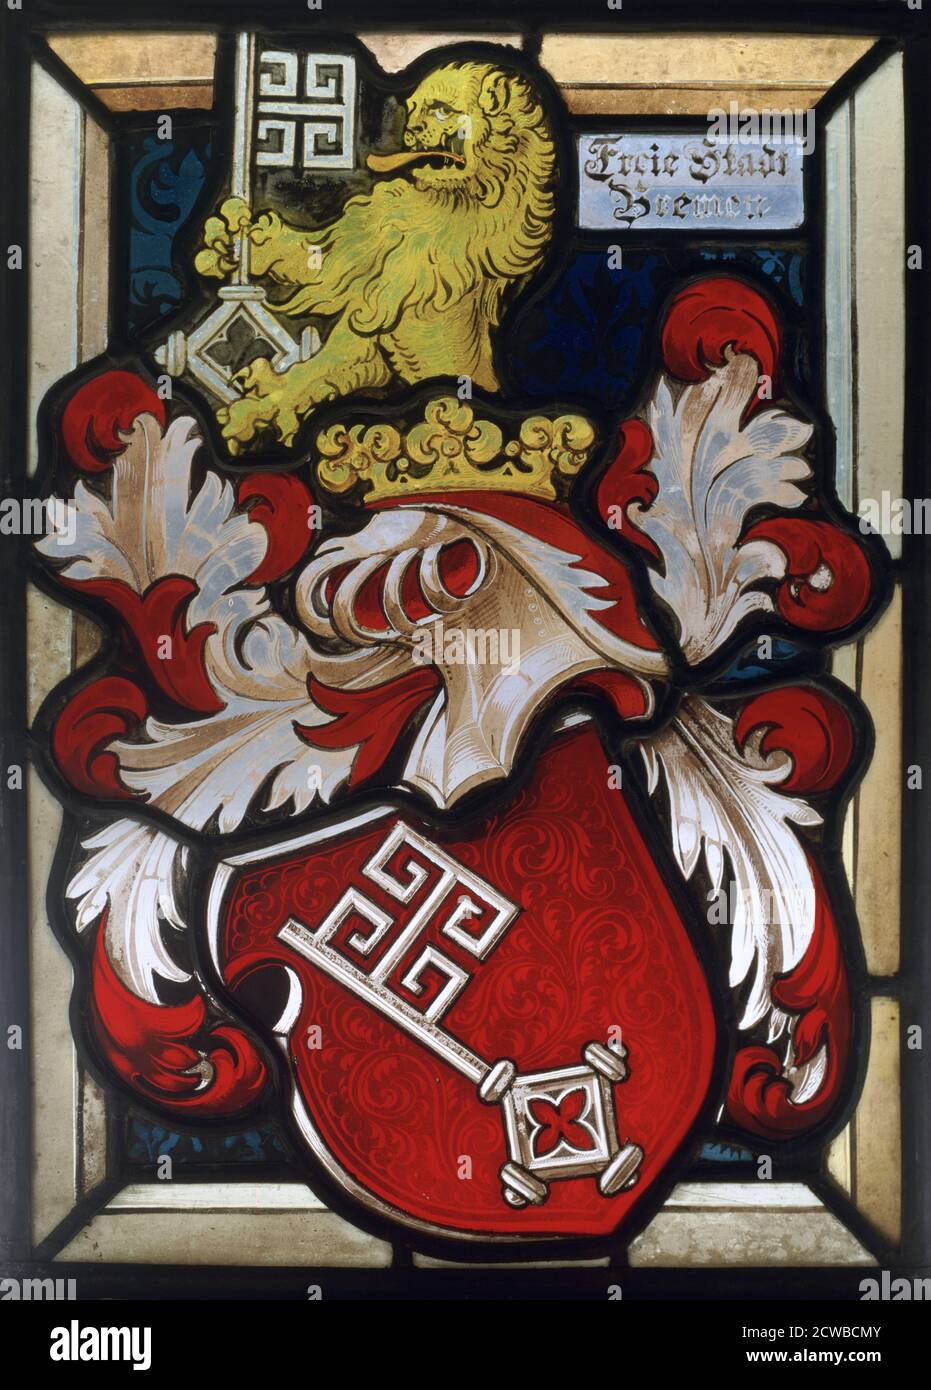 Stemma, 16 ° secolo. Finestra in vetro colorato di una cresta araldica che mostra un leone con una chiave che sormonta un casco coronato. L'iscrizione si riferisce alla libertà della città di Brema in Germania, ma l'artista è sconosciuto. Foto Stock